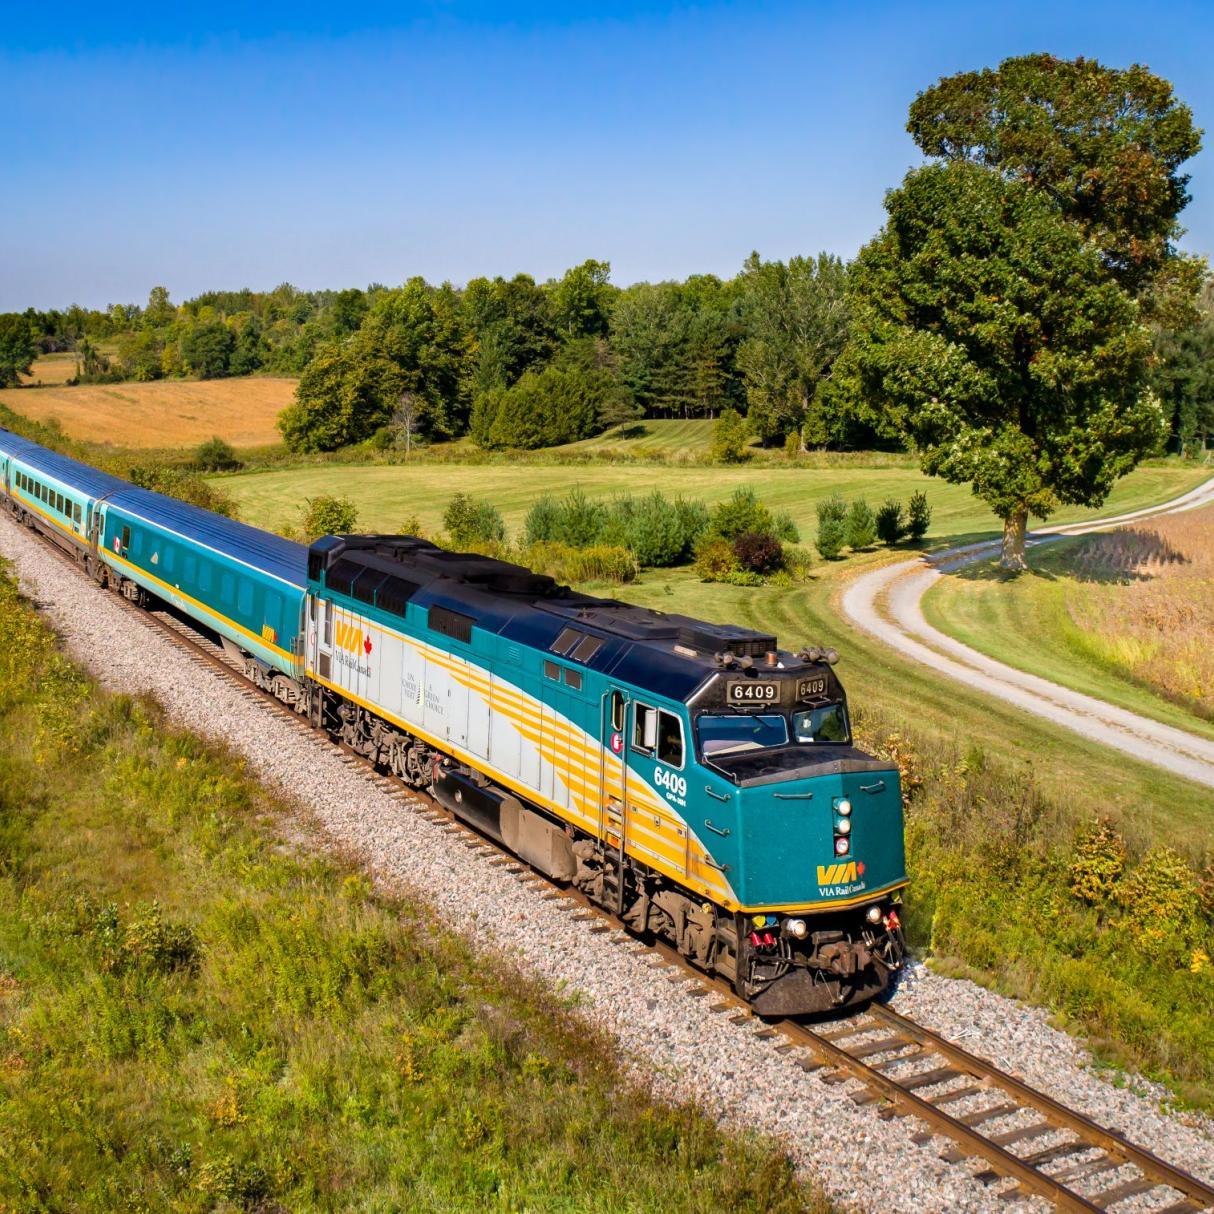 A Via Rail train travels through a green landscape